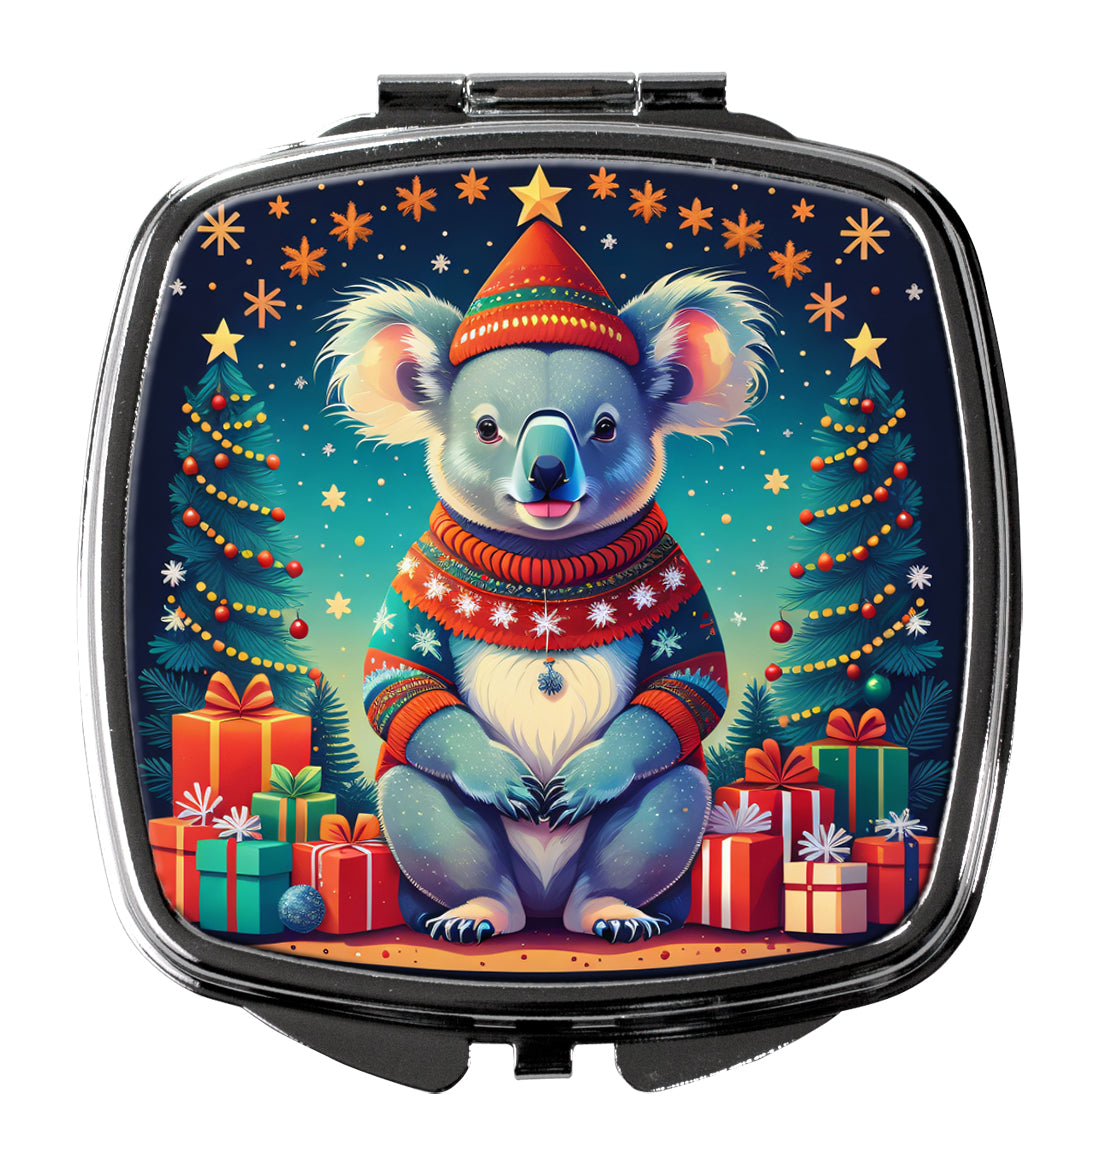 Buy this Koala Christmas Compact Mirror